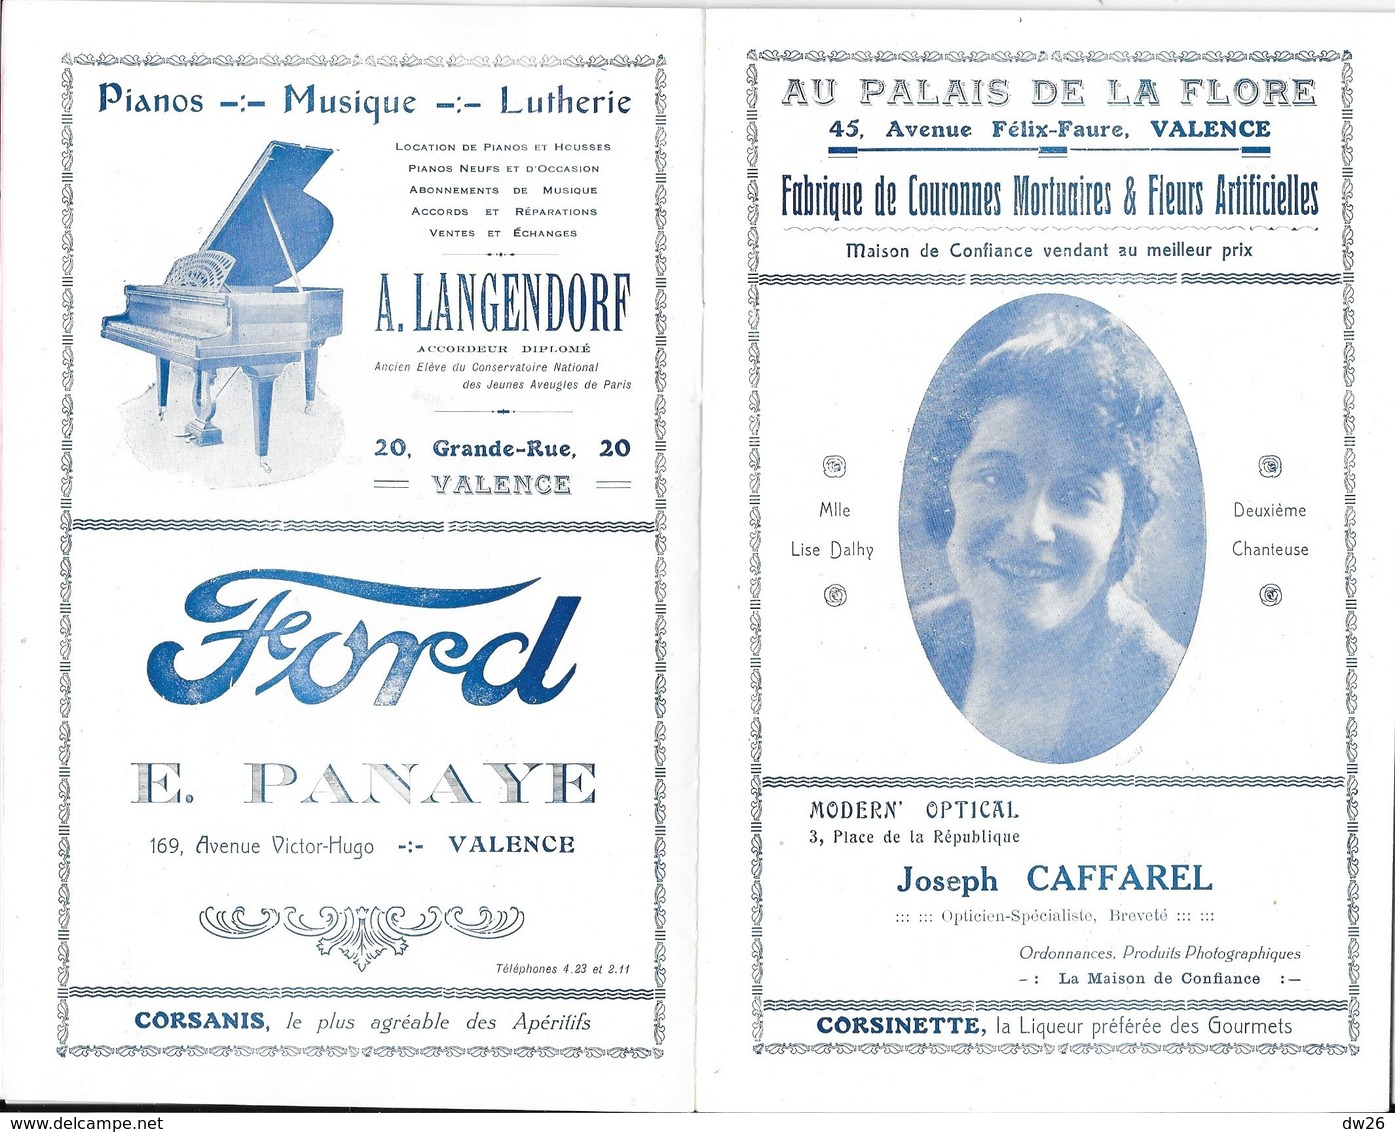 Ville De Valence - Programme Officiel De L'Opéra Municipal, Saison 1925-26 - Opérette: P.L.M., Artistes - Programas